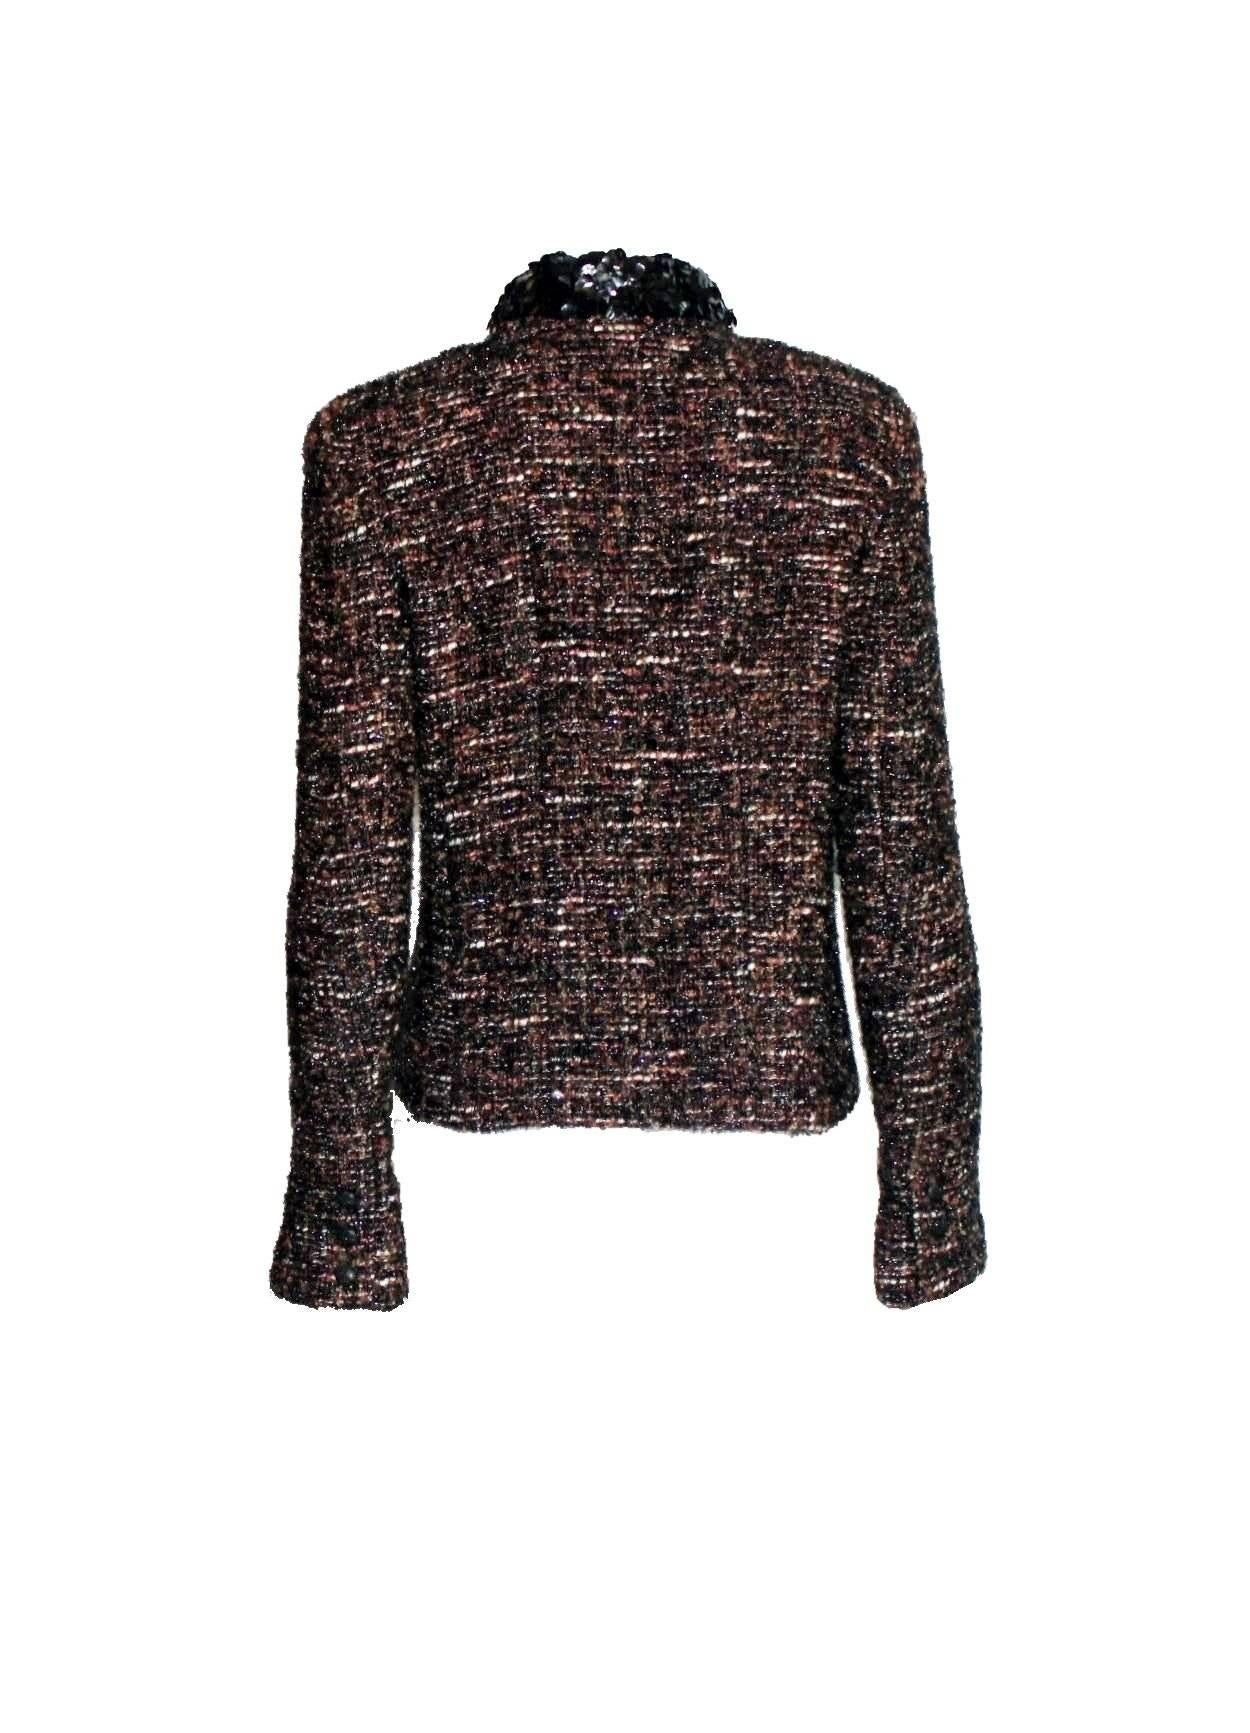 Superbe blazer fantaisie Chanel en tweed métallisé bordé de sequins Excellent état - En vente à Switzerland, CH